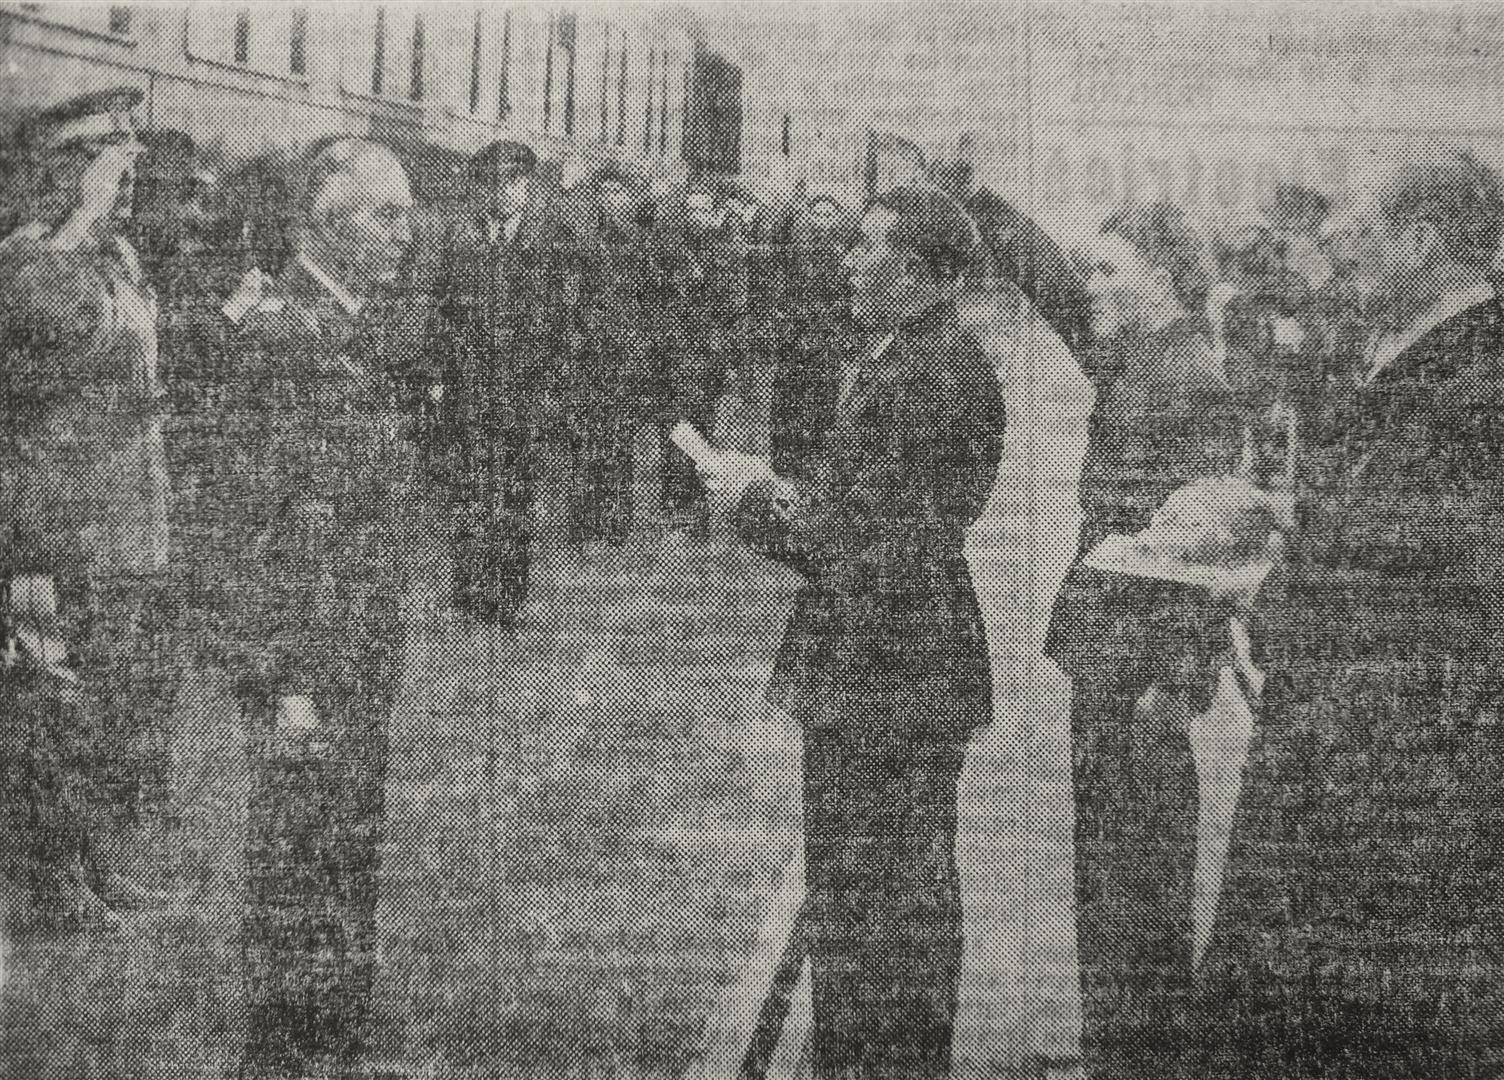 Întâmpinarea generalului Ion Antonescu cu pâine şi sare de către Aurel Bozdoc, primarul oraşului Alba Iulia.